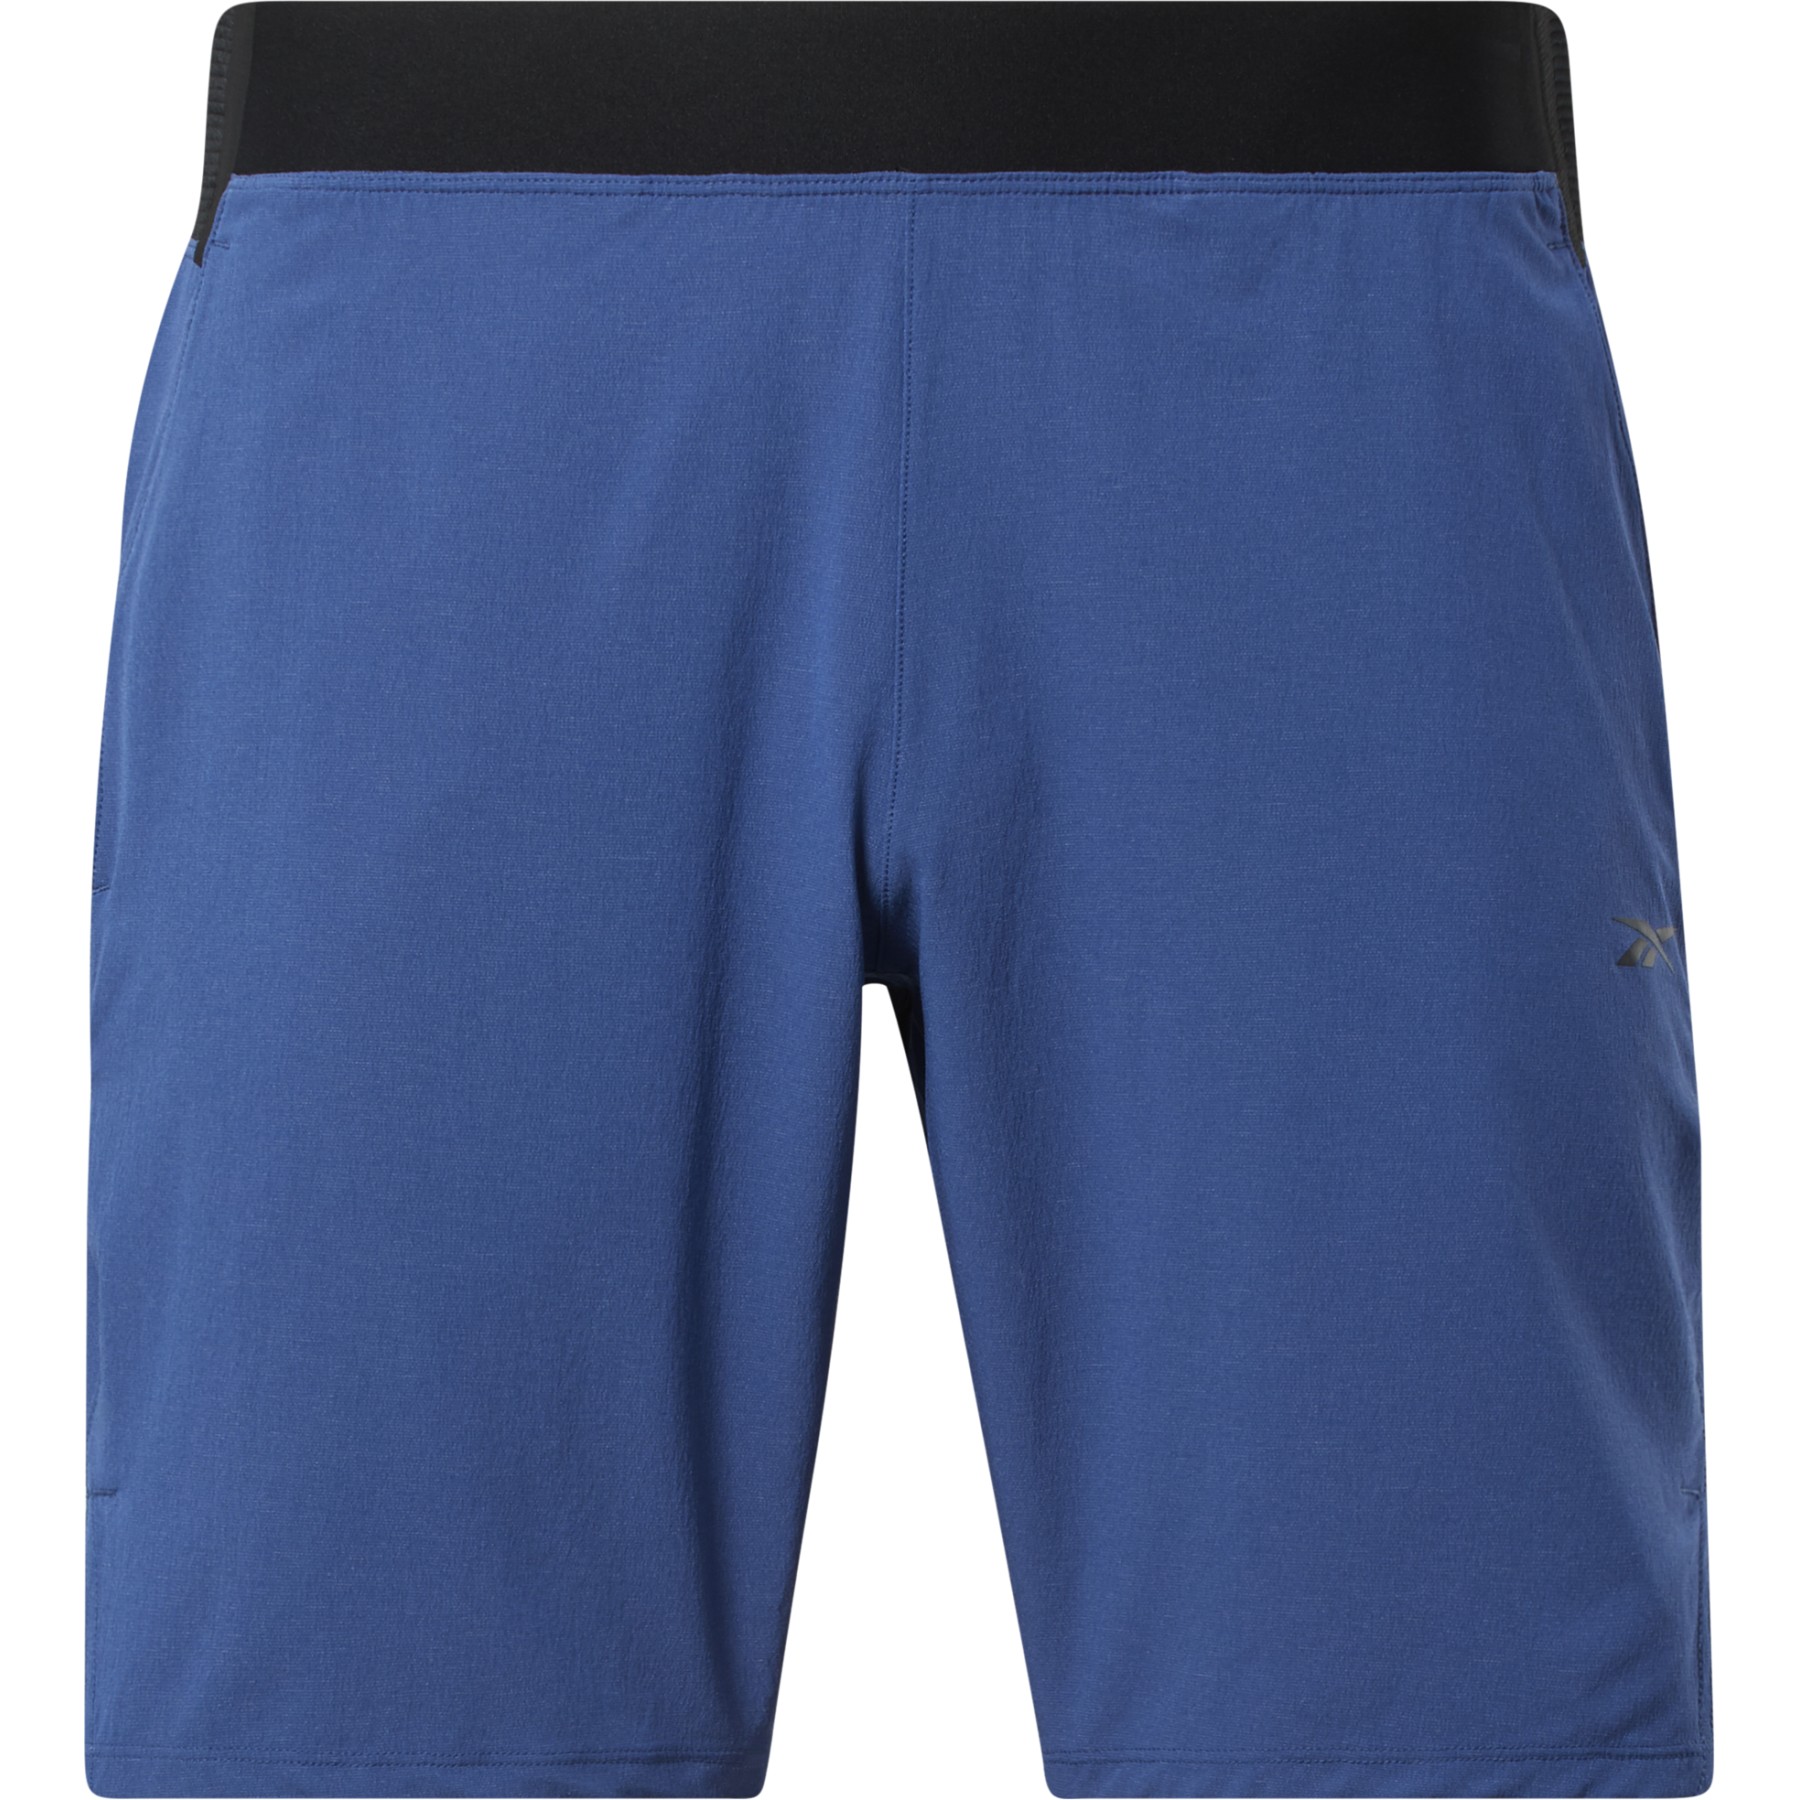 Produktbild von Reebok Strength Epic Herren Shorts - batik blue